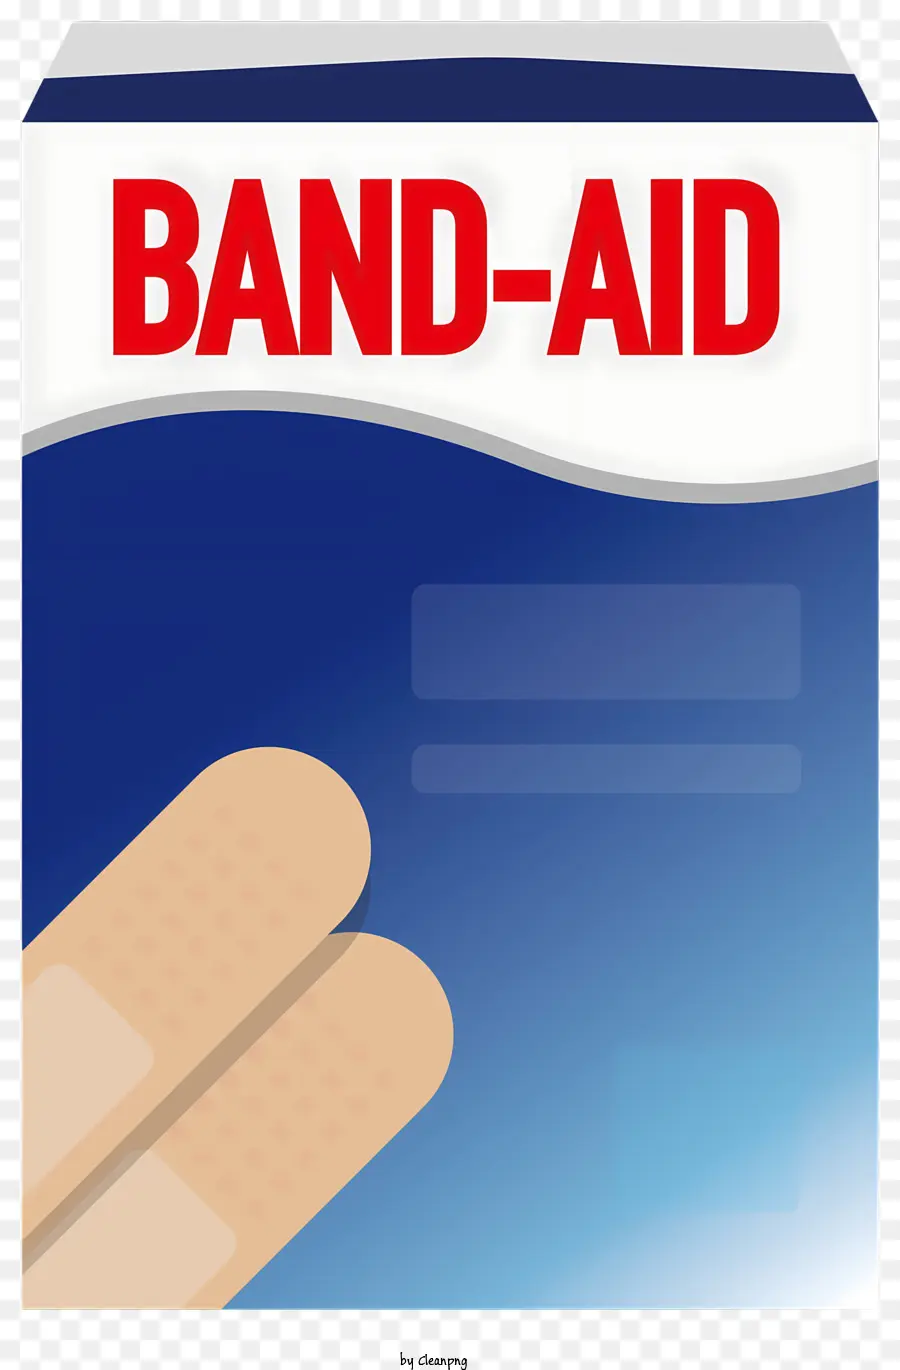 Band Aid Band-Aid Finger Bandage Sid Vật tư y tế - Viện trợ ban nhạc có hình dạng như ngón tay trên màu xanh đậm